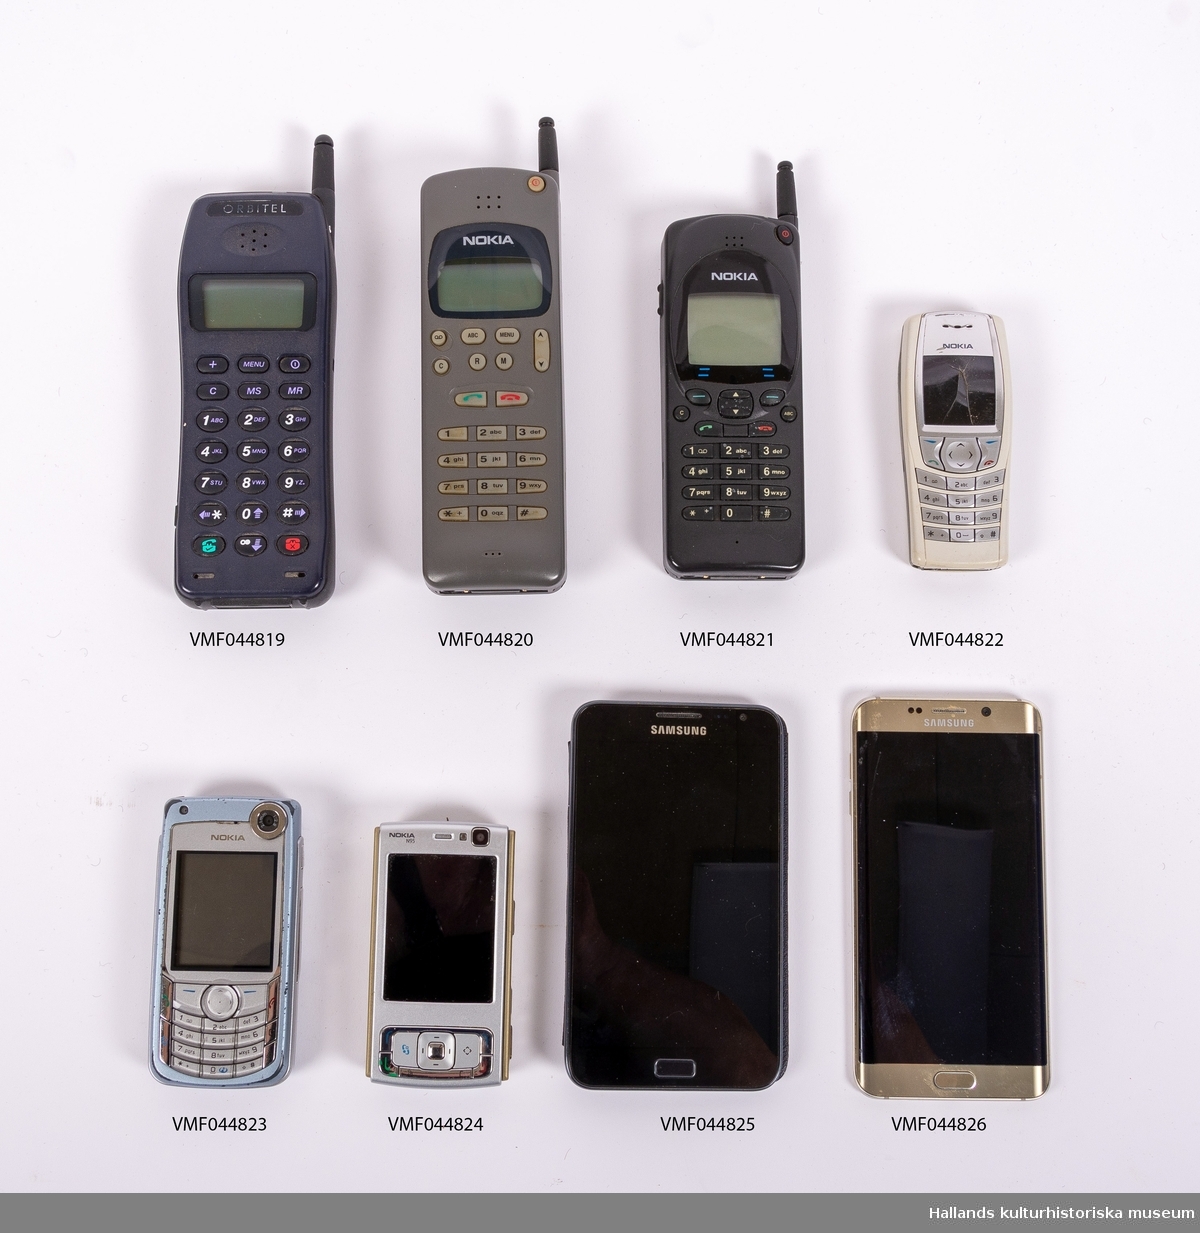 Nokia 2110 (Tillverkare: Nokia, modell: 2110) med yttre skal av svart hårdplast. På framsidan finns en digital skärm, en gummerad knappsats, högtalare, mikrofon, samt tillverkarens logotyp "Nokia" ovanför skärmen. Telefonen har en utfällbar pinnformad antenn. Telefonens baksida utgörs till ungefär 2/3 av ett avtagbart batteri. Ovanför batteriet en lucka för telefonkort (simkort) samt tillverkarens logotyp. Telefonkortet sitter kvar under luckan. På telefonens undersida en kontakt under lucka